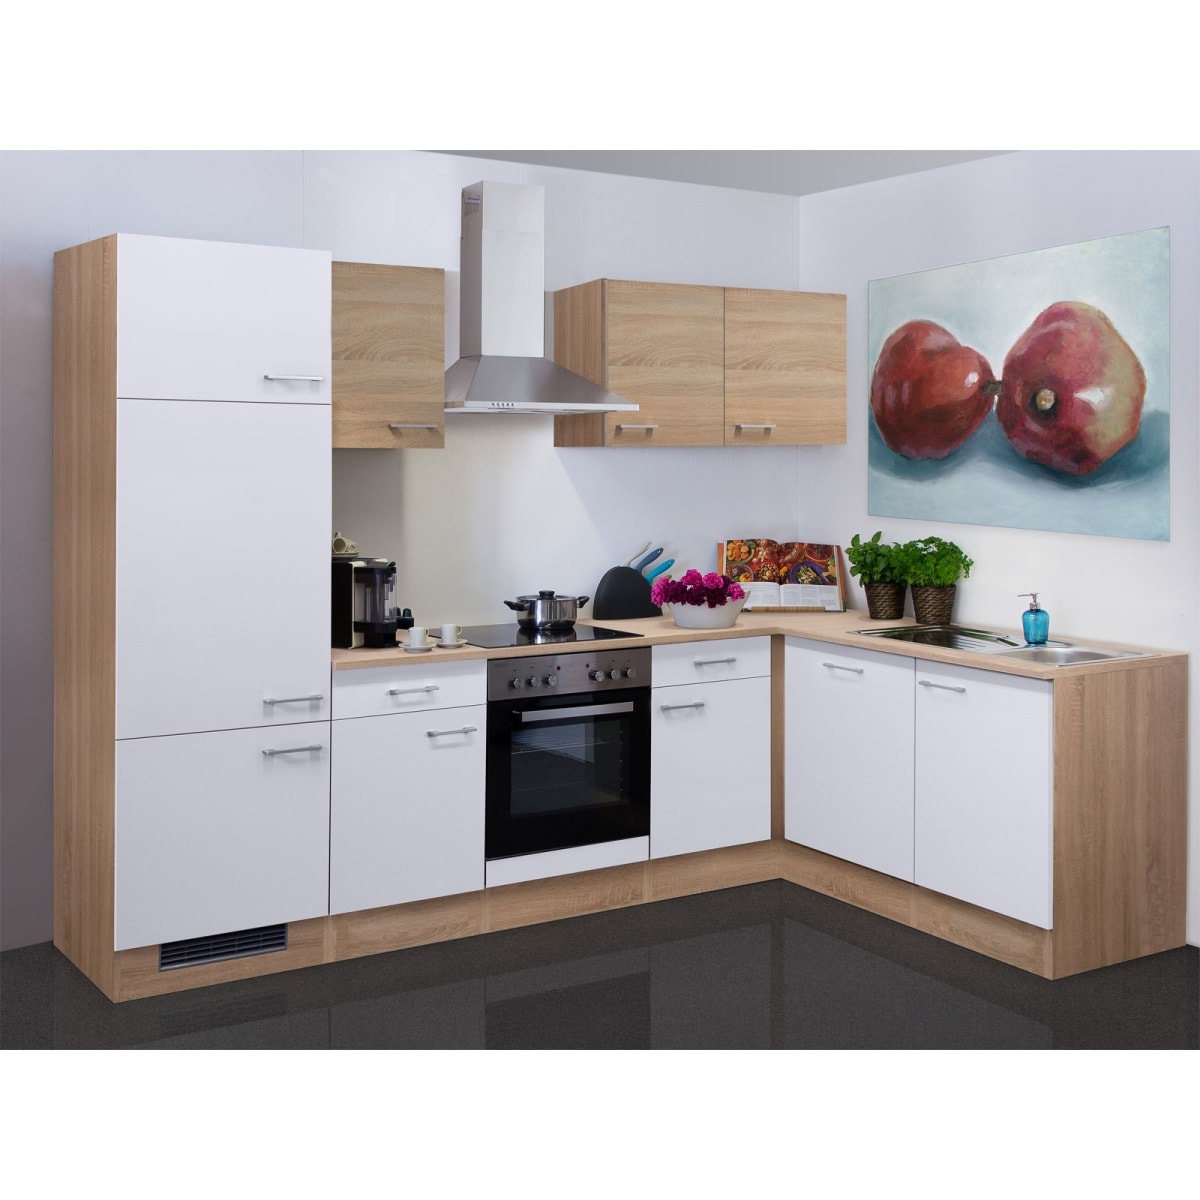 Küchenblock Samoa Weiß/Eiche Sonoma ca. 280 x 170 cm | Möbel Boss